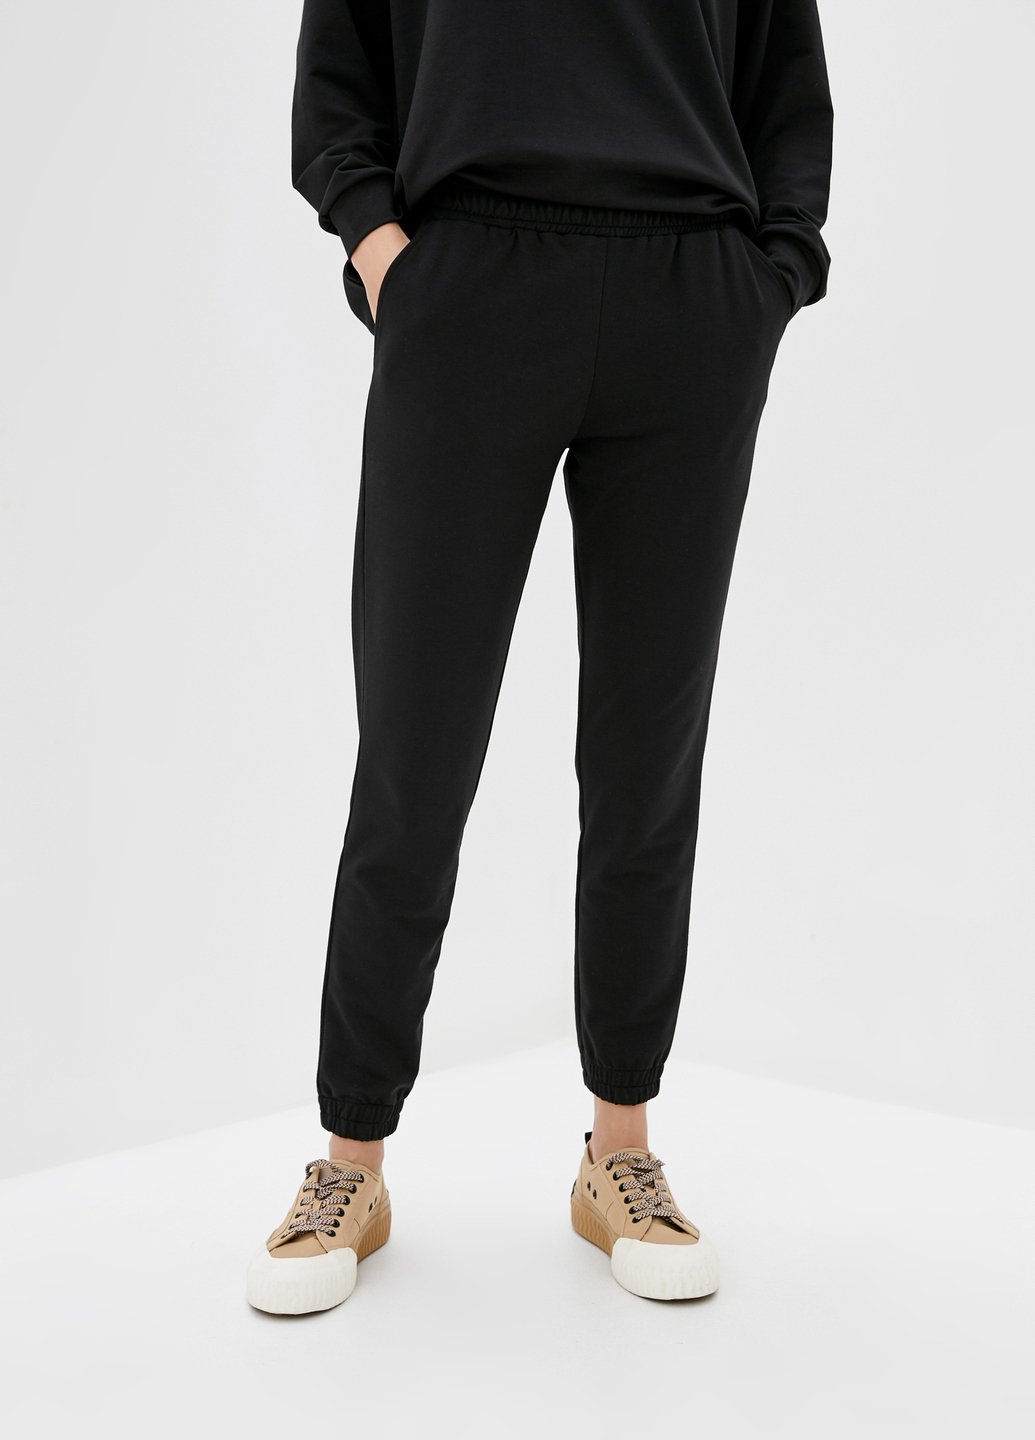 Купити Спортивні штани жіночі Merlini Латина 600000014 - Чорний, 42-44 в інтернет-магазині